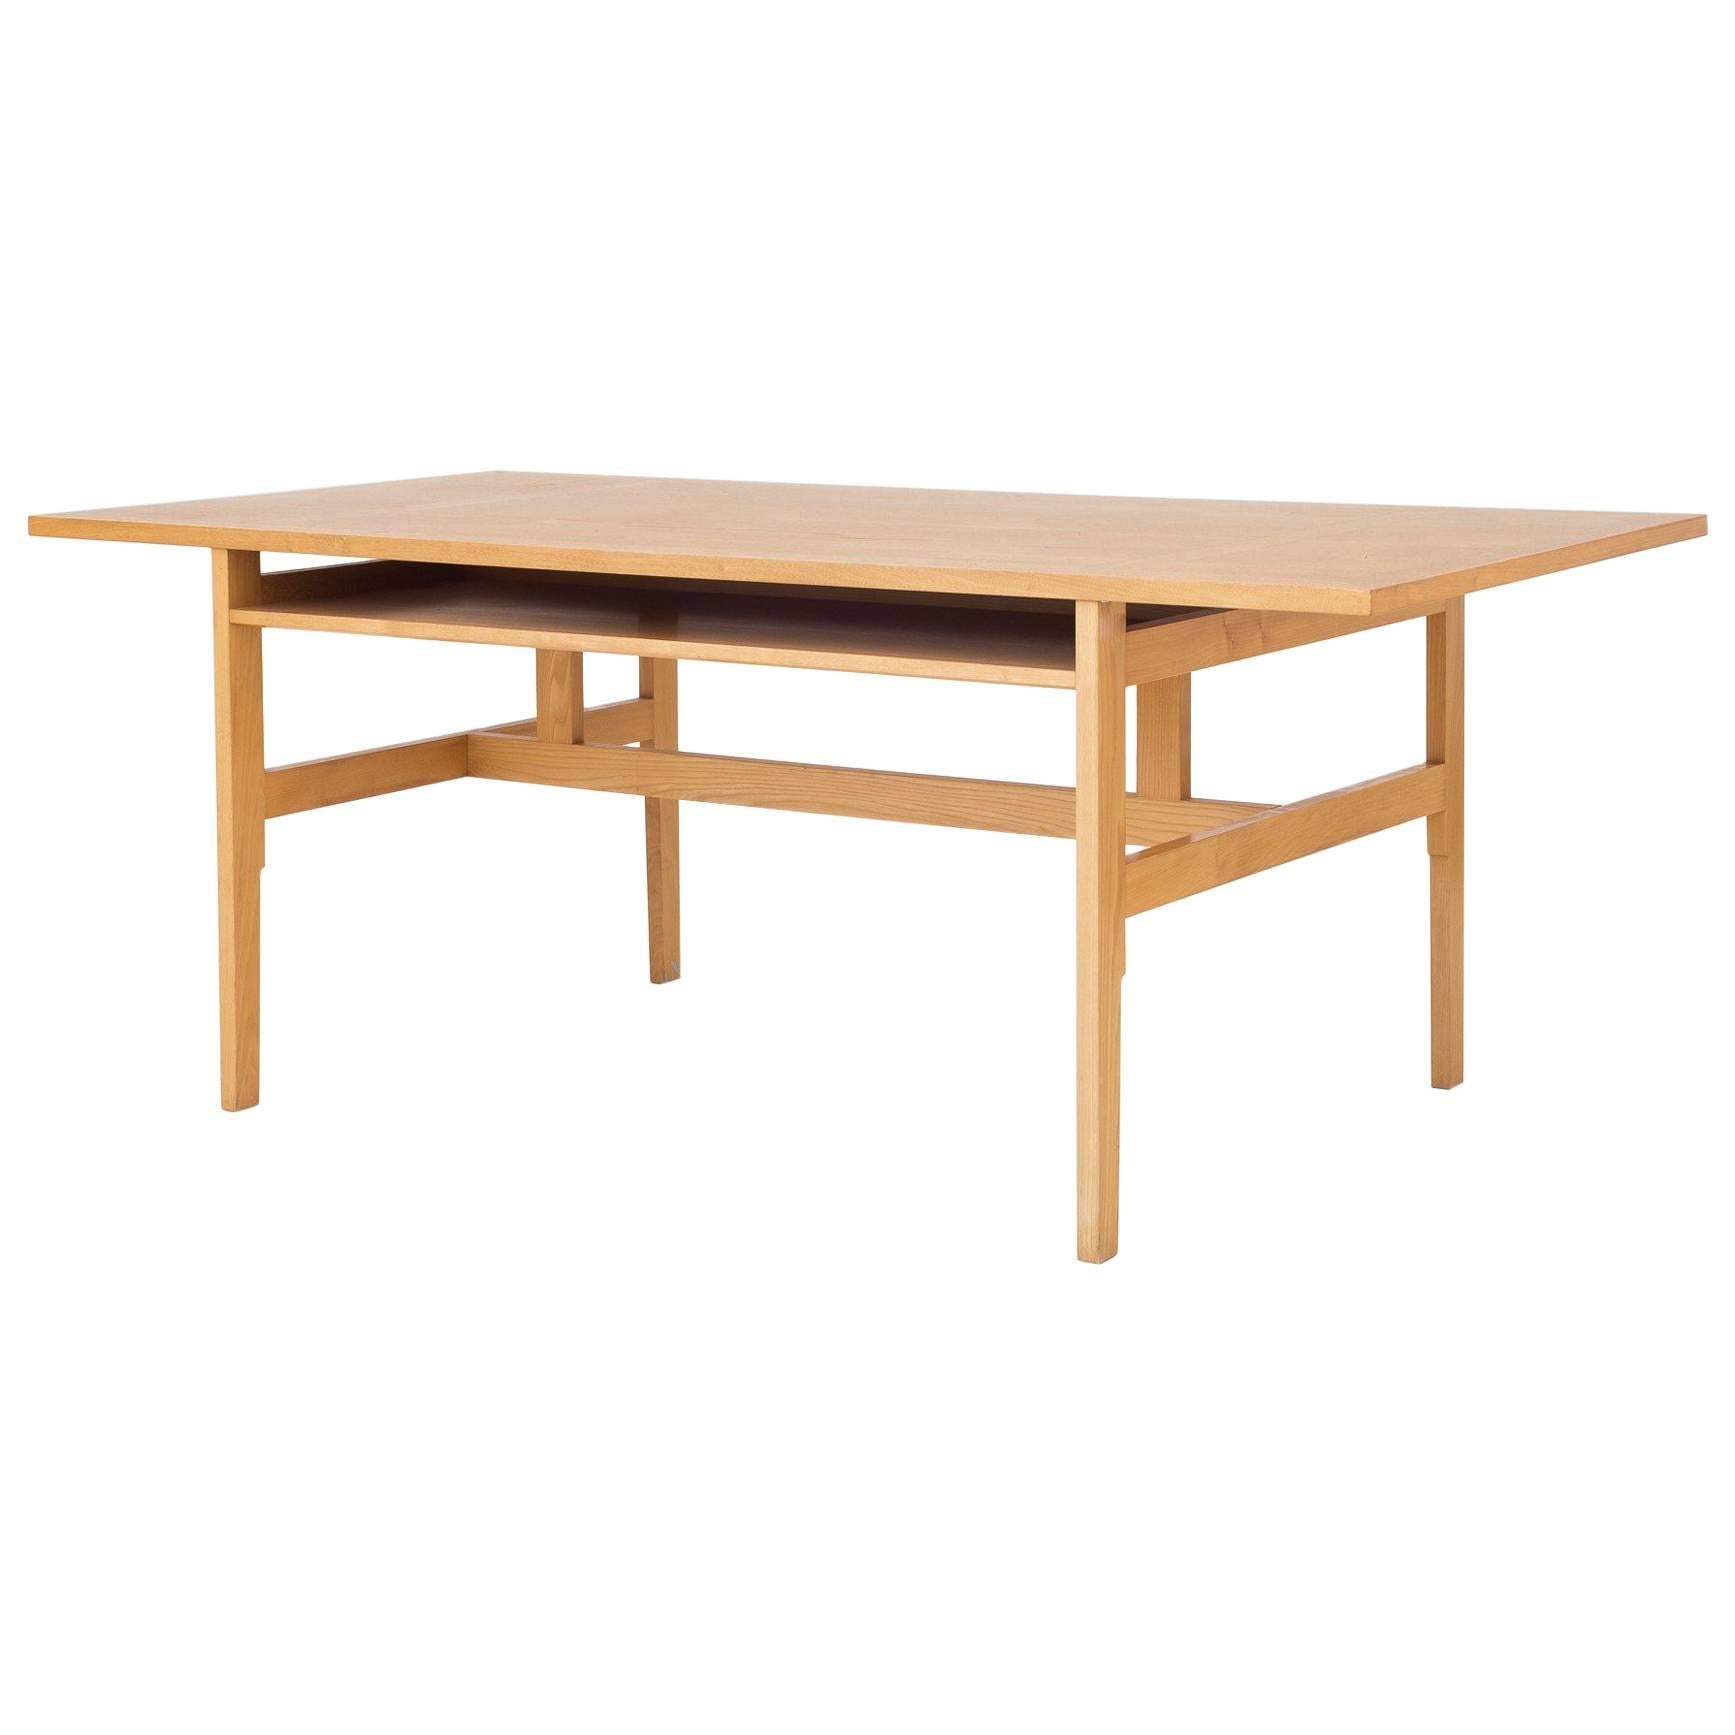 Table by Mogens Koch